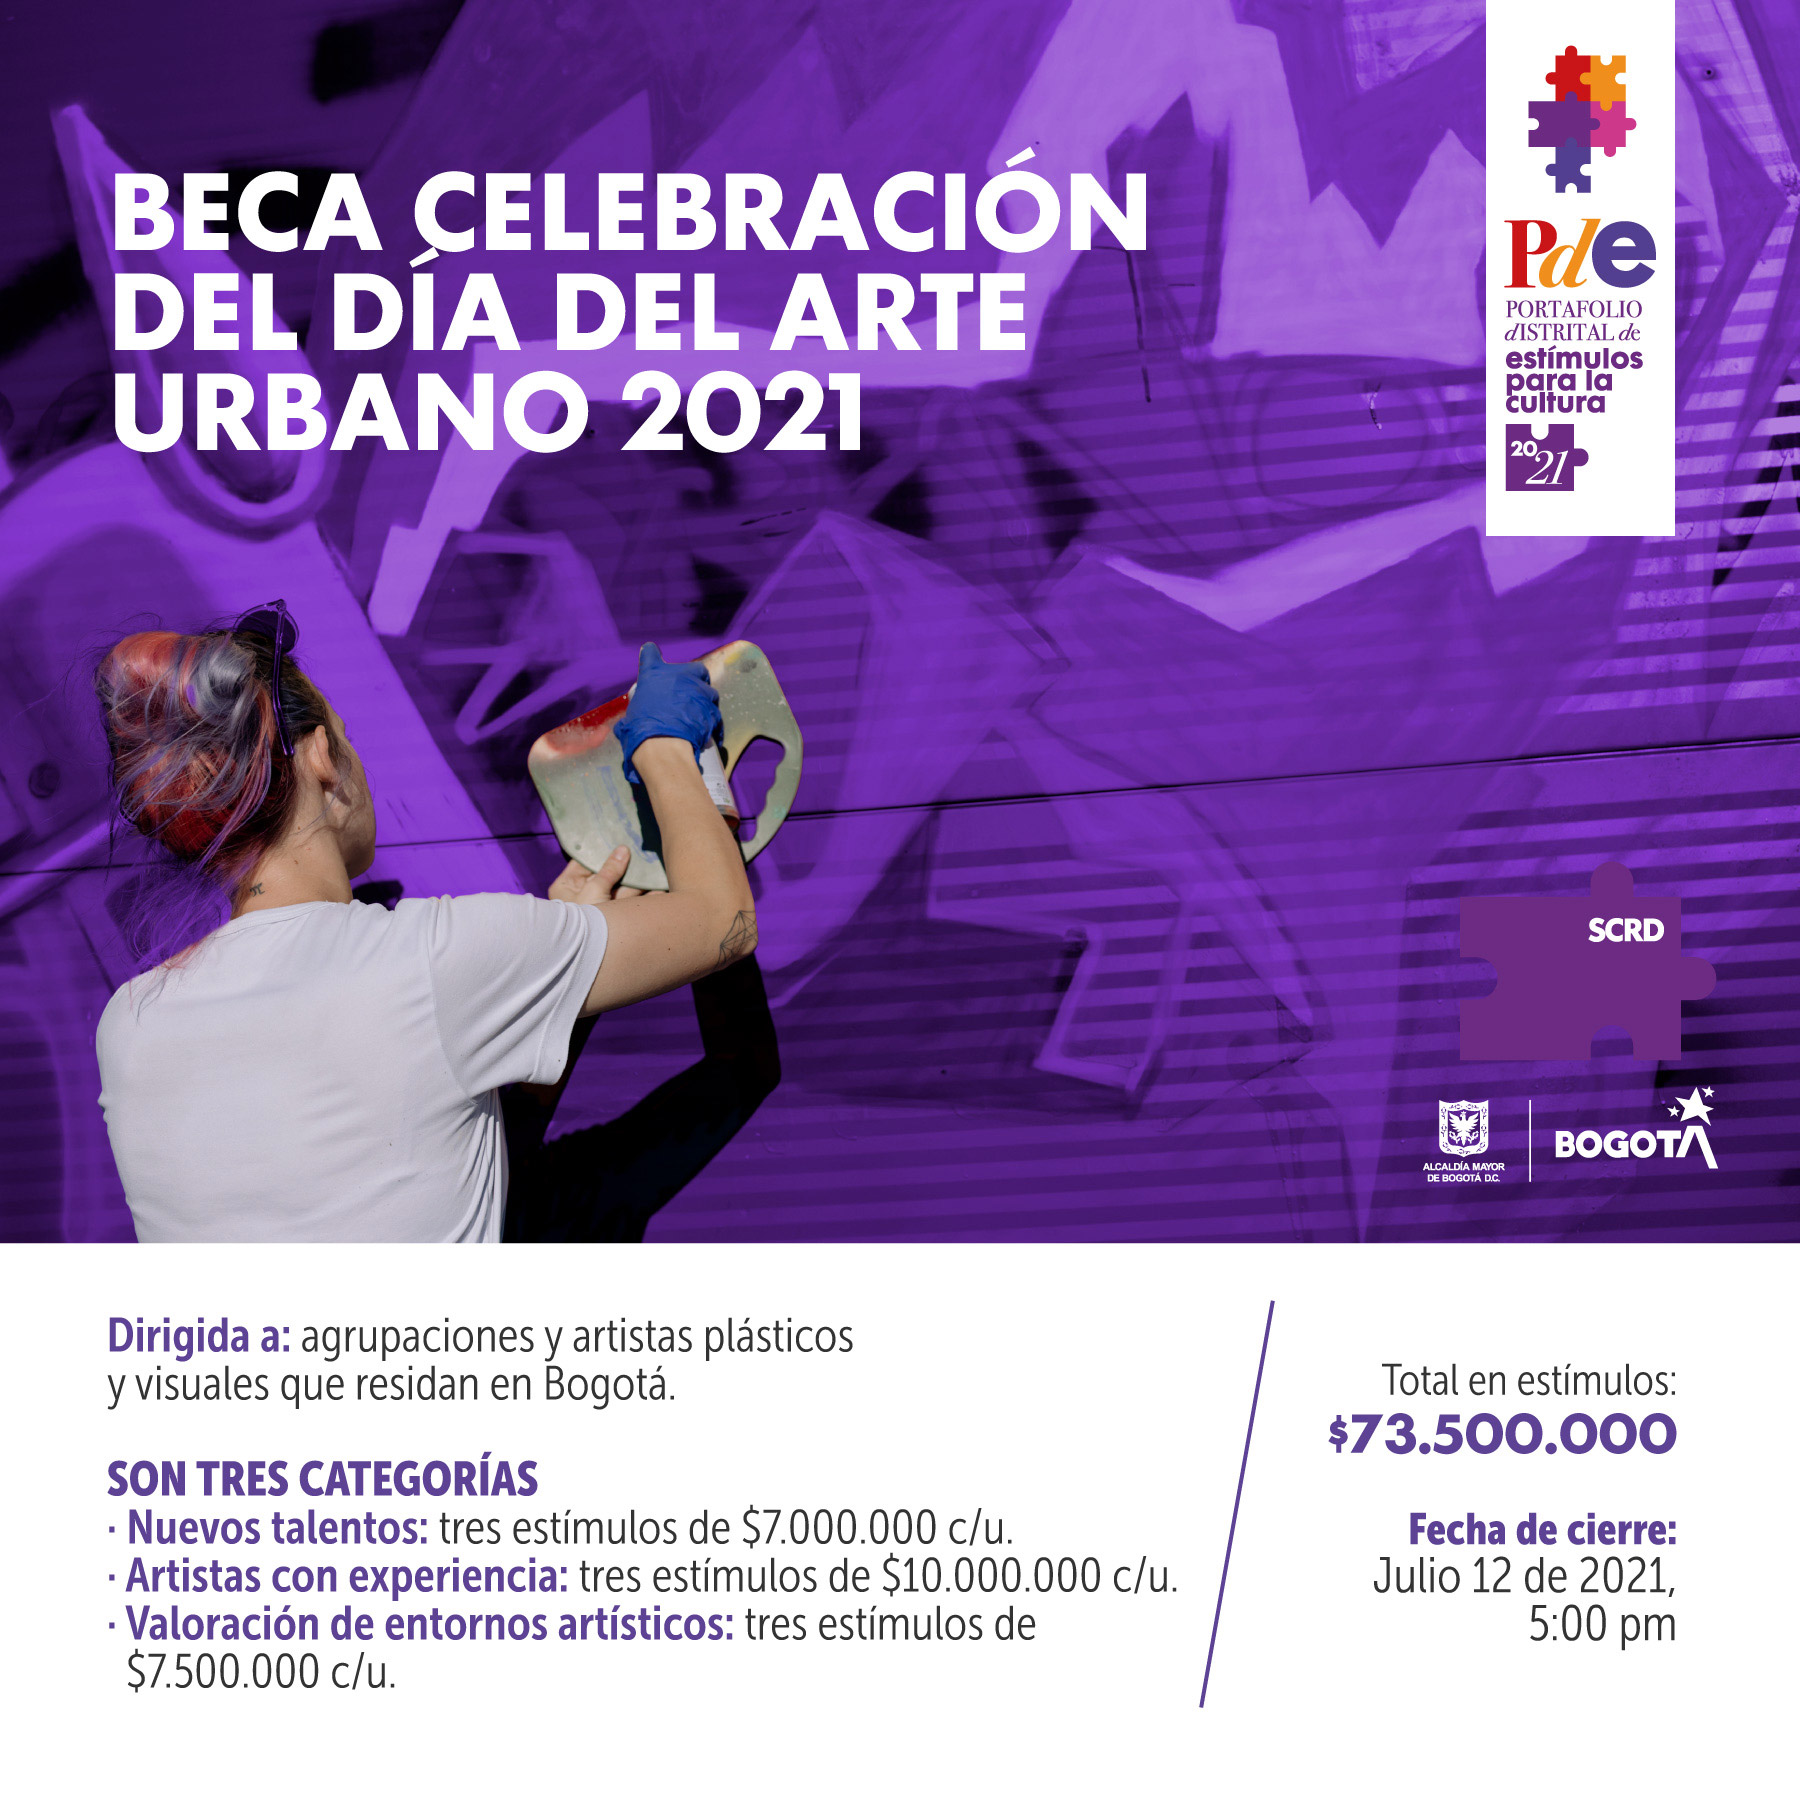 Beca Celebración del Día del Arte Urbano 2021